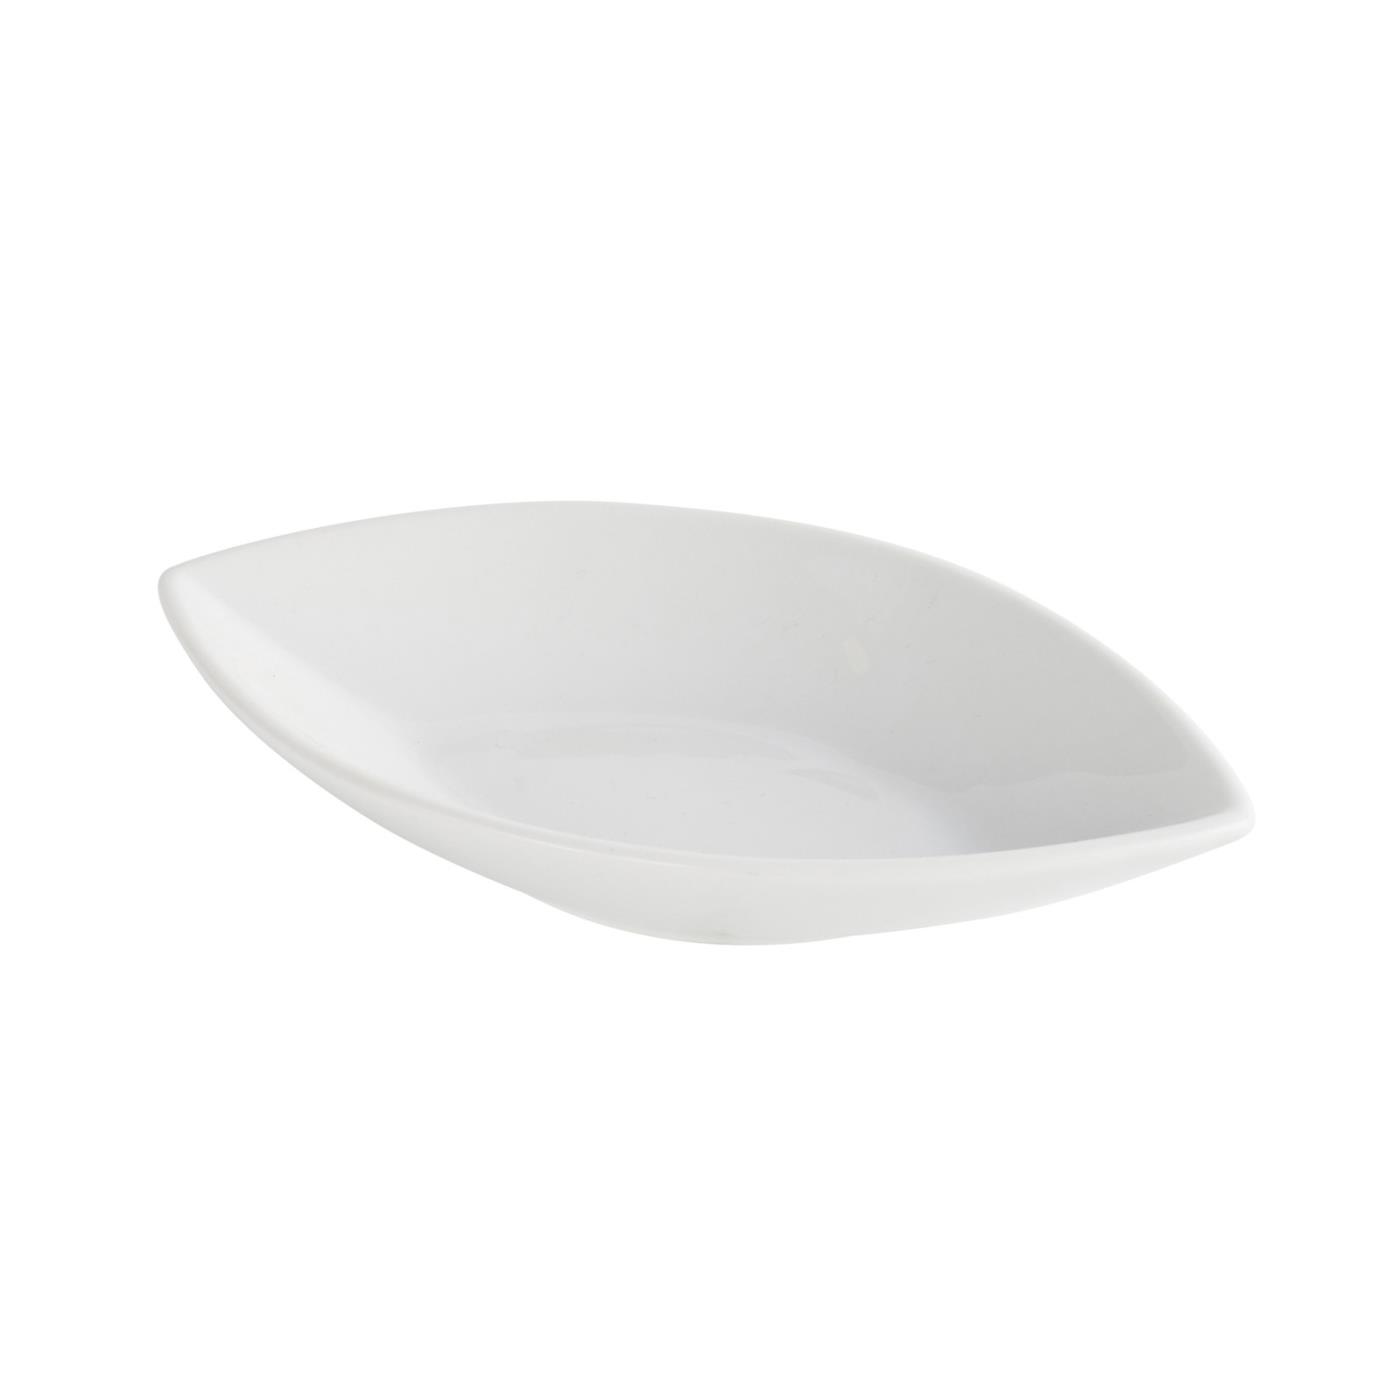 Ceramic Oval Point Tip Tasting Dish - Ceramic Oval Tasting Dish 6.5"